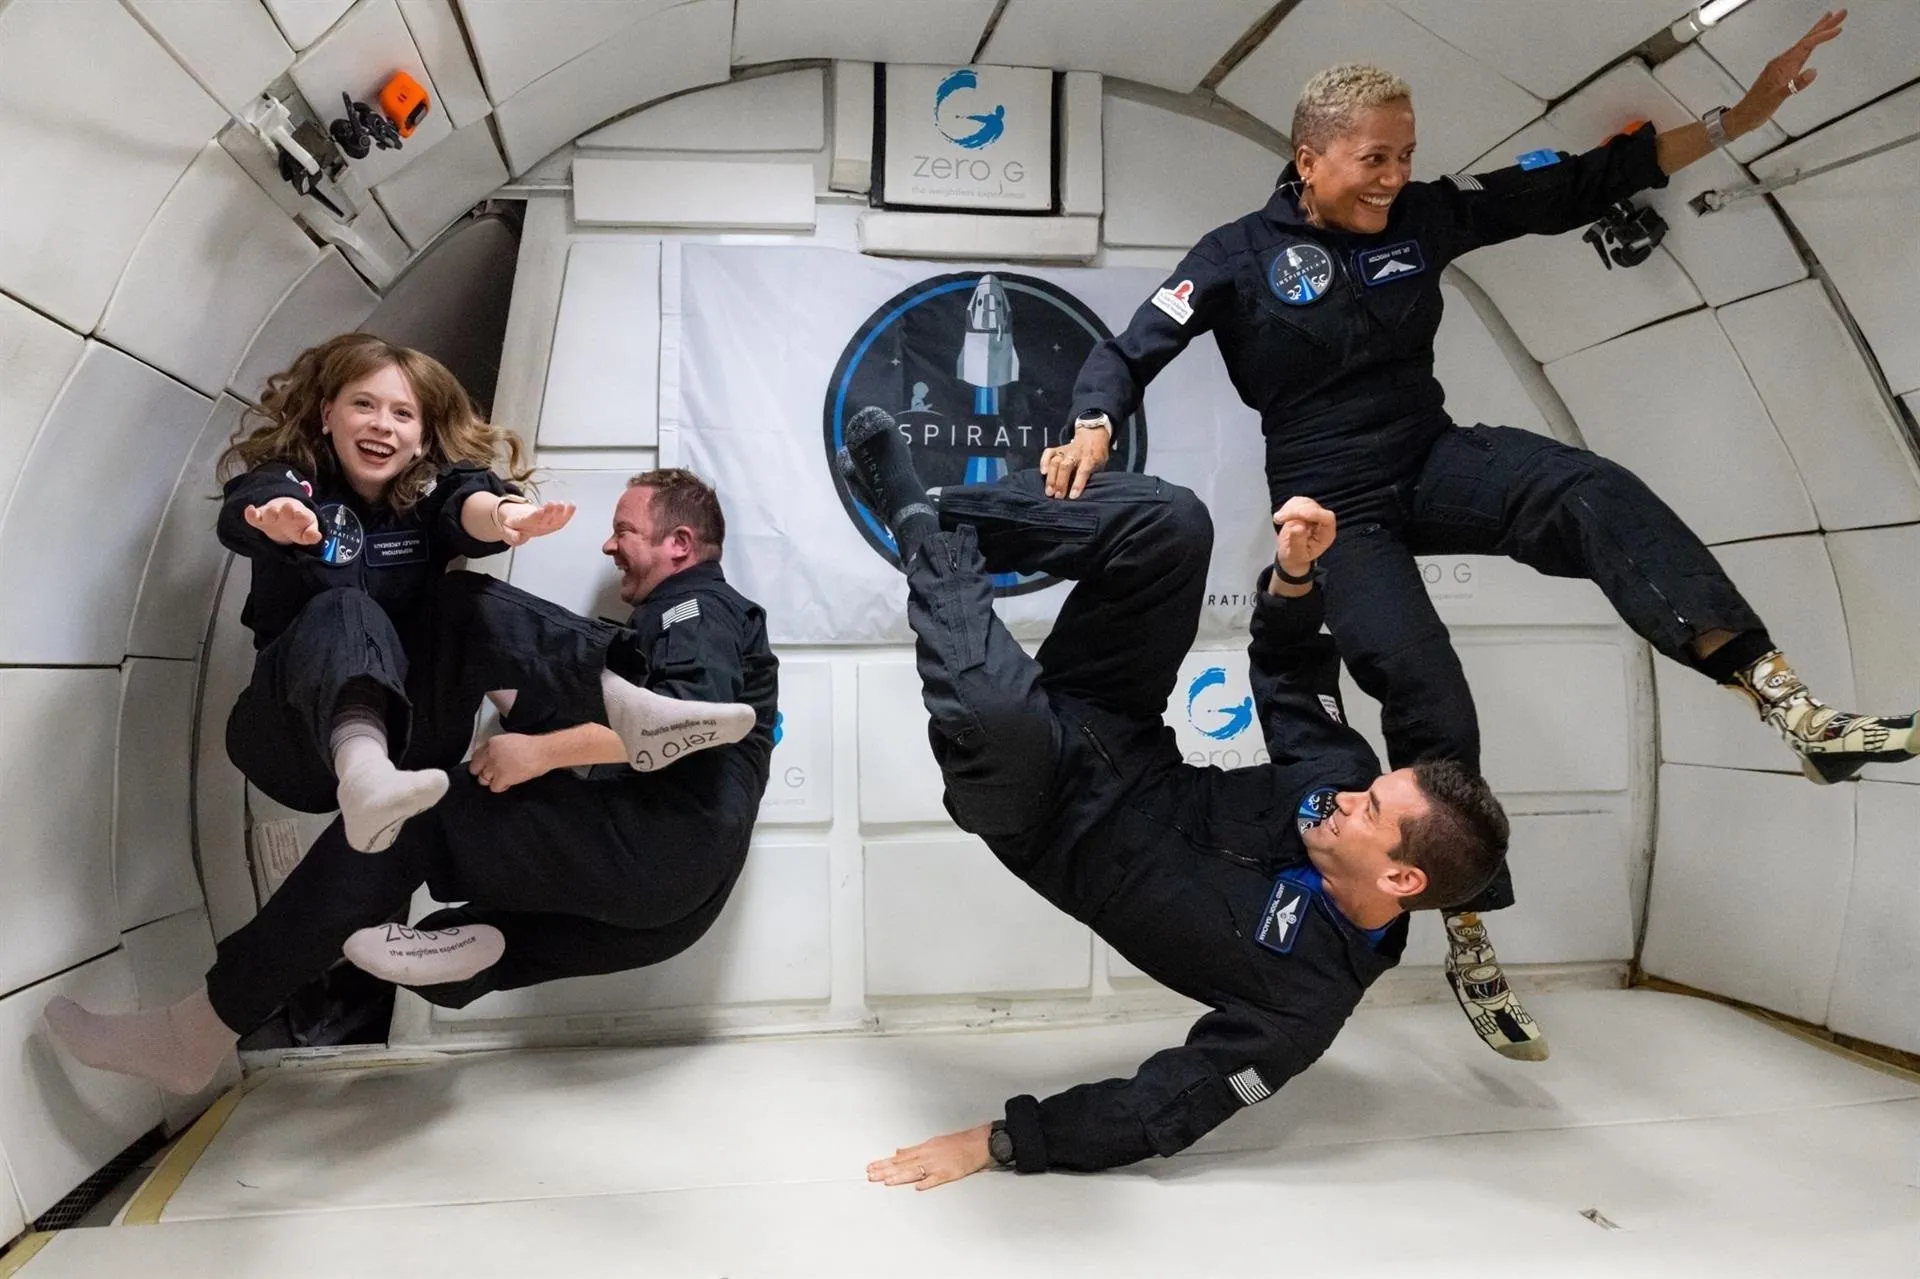 Millonario viaja al espacio con tres amigos en nave pilotada por él